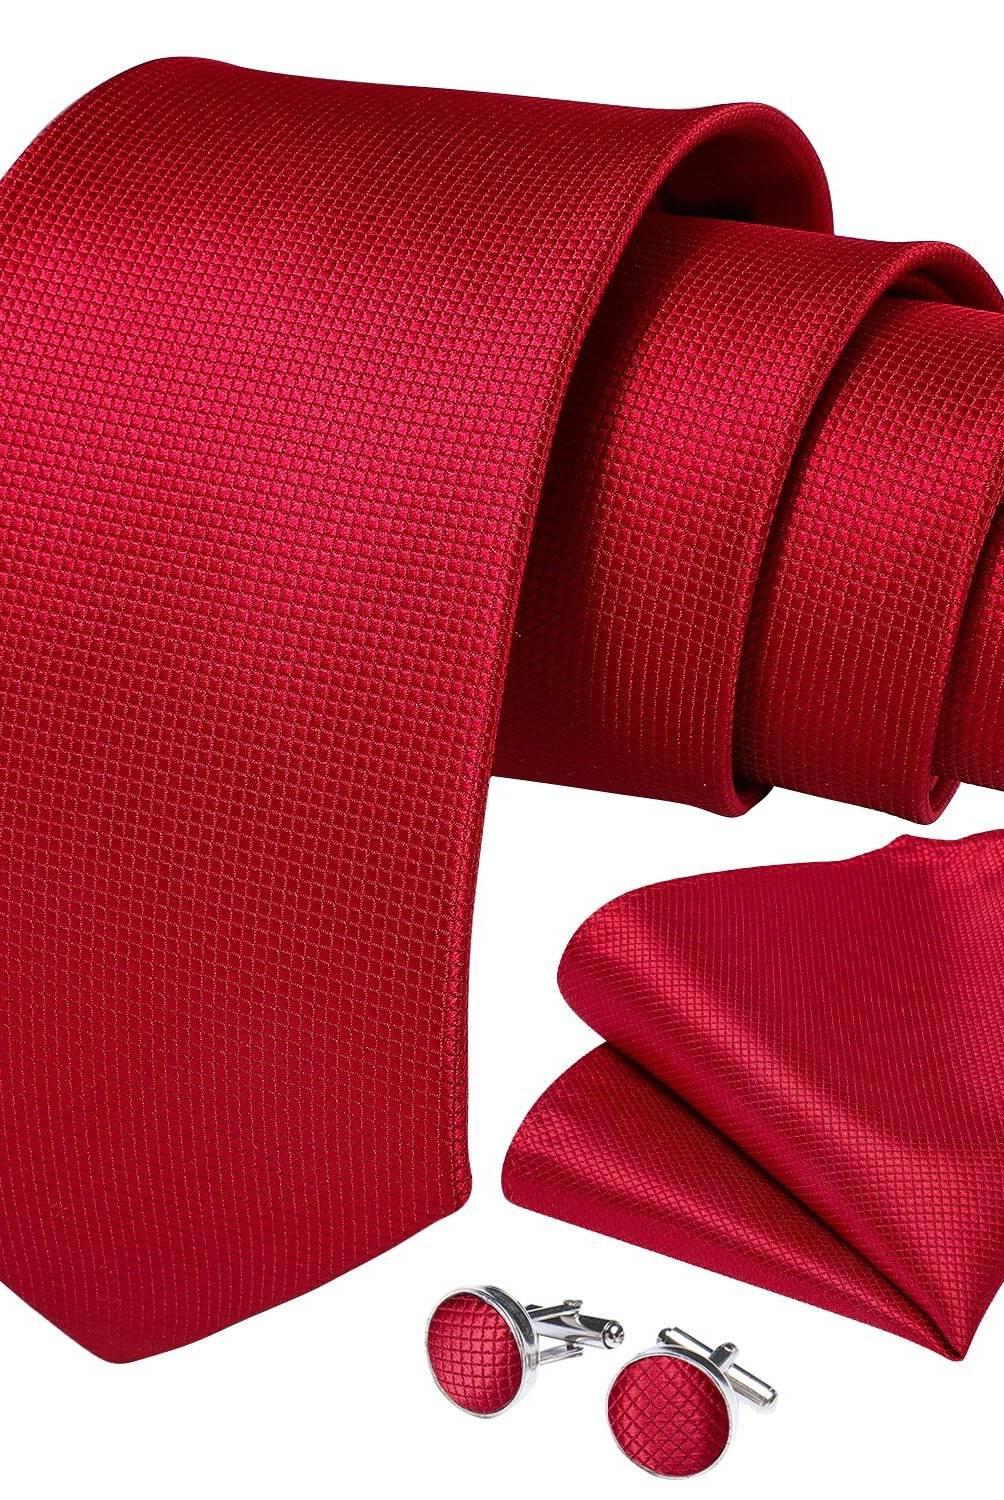 SONEC FASHION - Set Corbata Hombre Paño Colleras. Rojo Classic